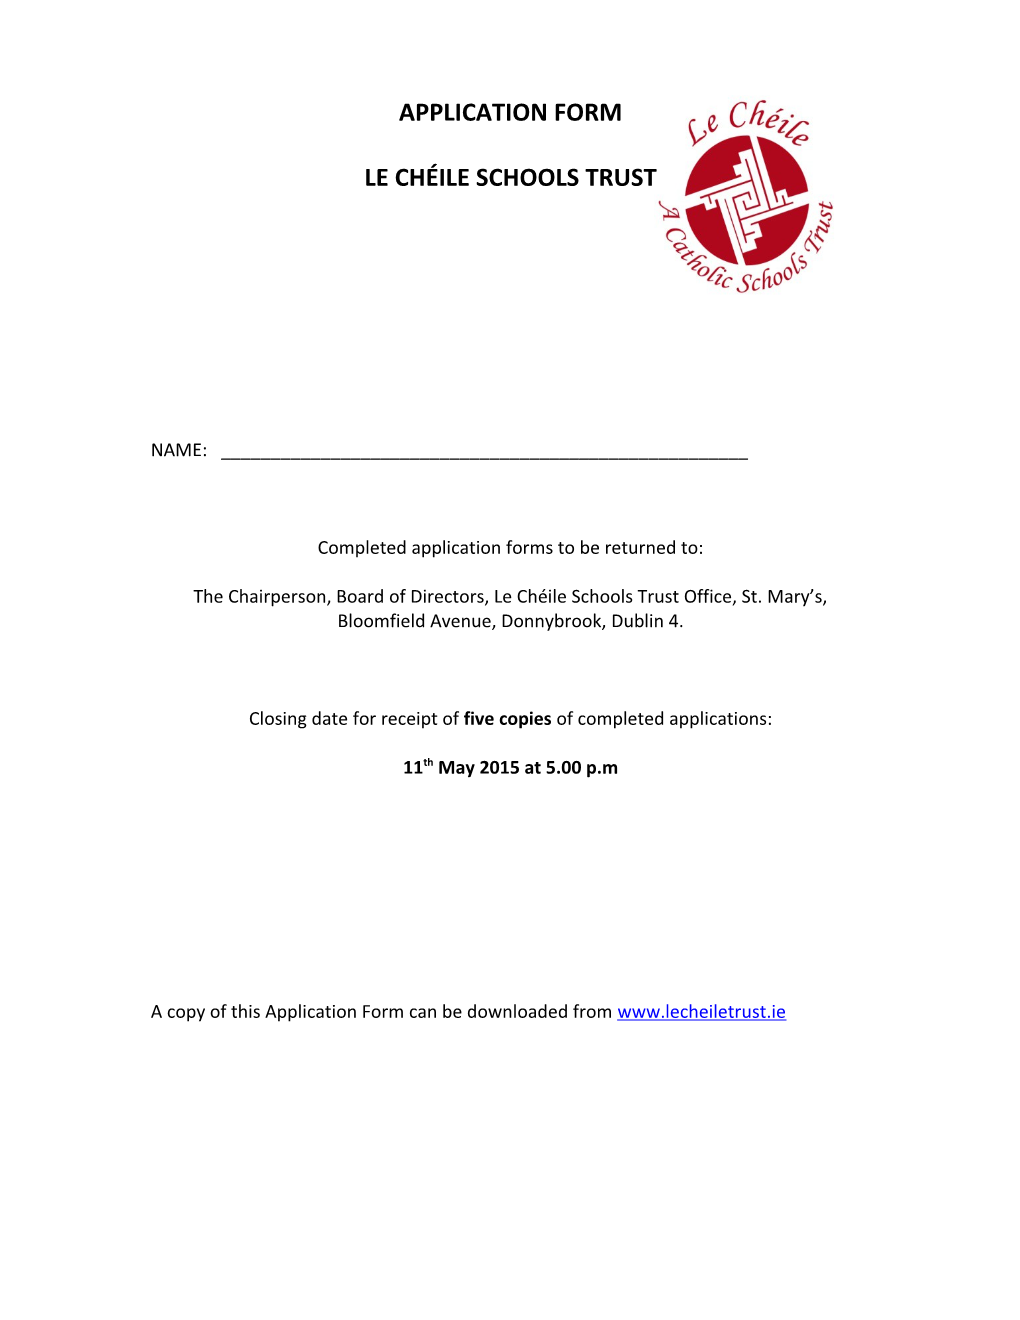 Le Chéile Schools Trust